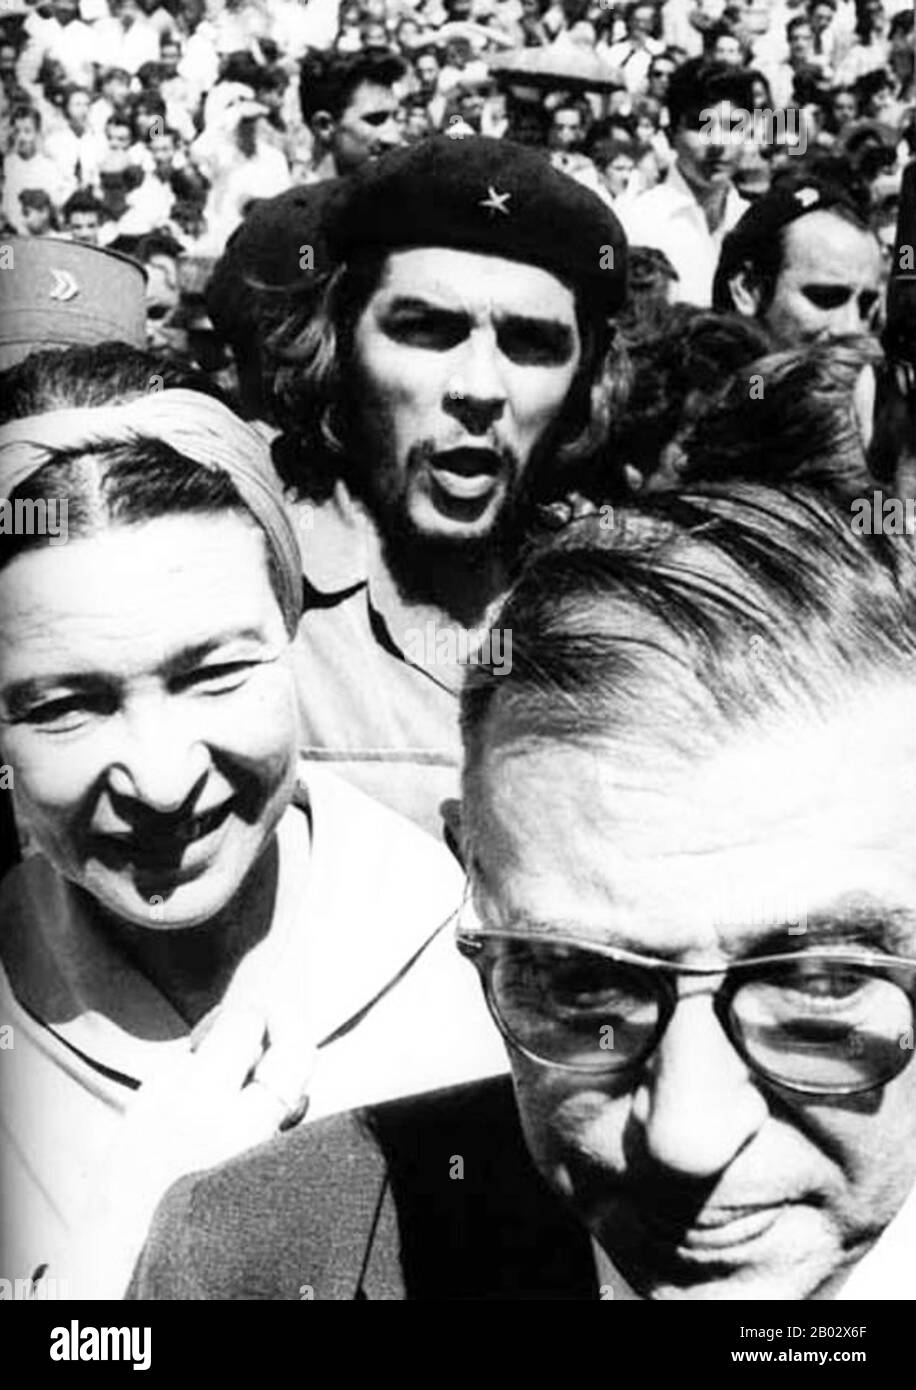 Im Jahr 1960 besuchten Jean-Paul Sartre und Simone de Beauvoir Kuba während der "Flitterwochen der Revolution", wie Sartre schrieb. Der Militär-Strongman Fulgencio Batistas Regime war an Fidel Castros Guerillaarmee gefallen und das ganze Land war mit revolutionärem Eifer in Ordnung. Als das Paar nach Paris zurückkehrte, schrieb Sartre zahlreiche Artikel, die die Revolution ausstreichten. De Beauvoir, der ebenso beeindruckt war, schrieb: "Zum ersten Mal in unserem Leben waren wir Zeugen des Glücks, das durch Gewalt erreicht worden war". De Beauvoir und Sartre würden Castro letztlich in einem offenen Brief anprangern, der kritisierte Stockfoto